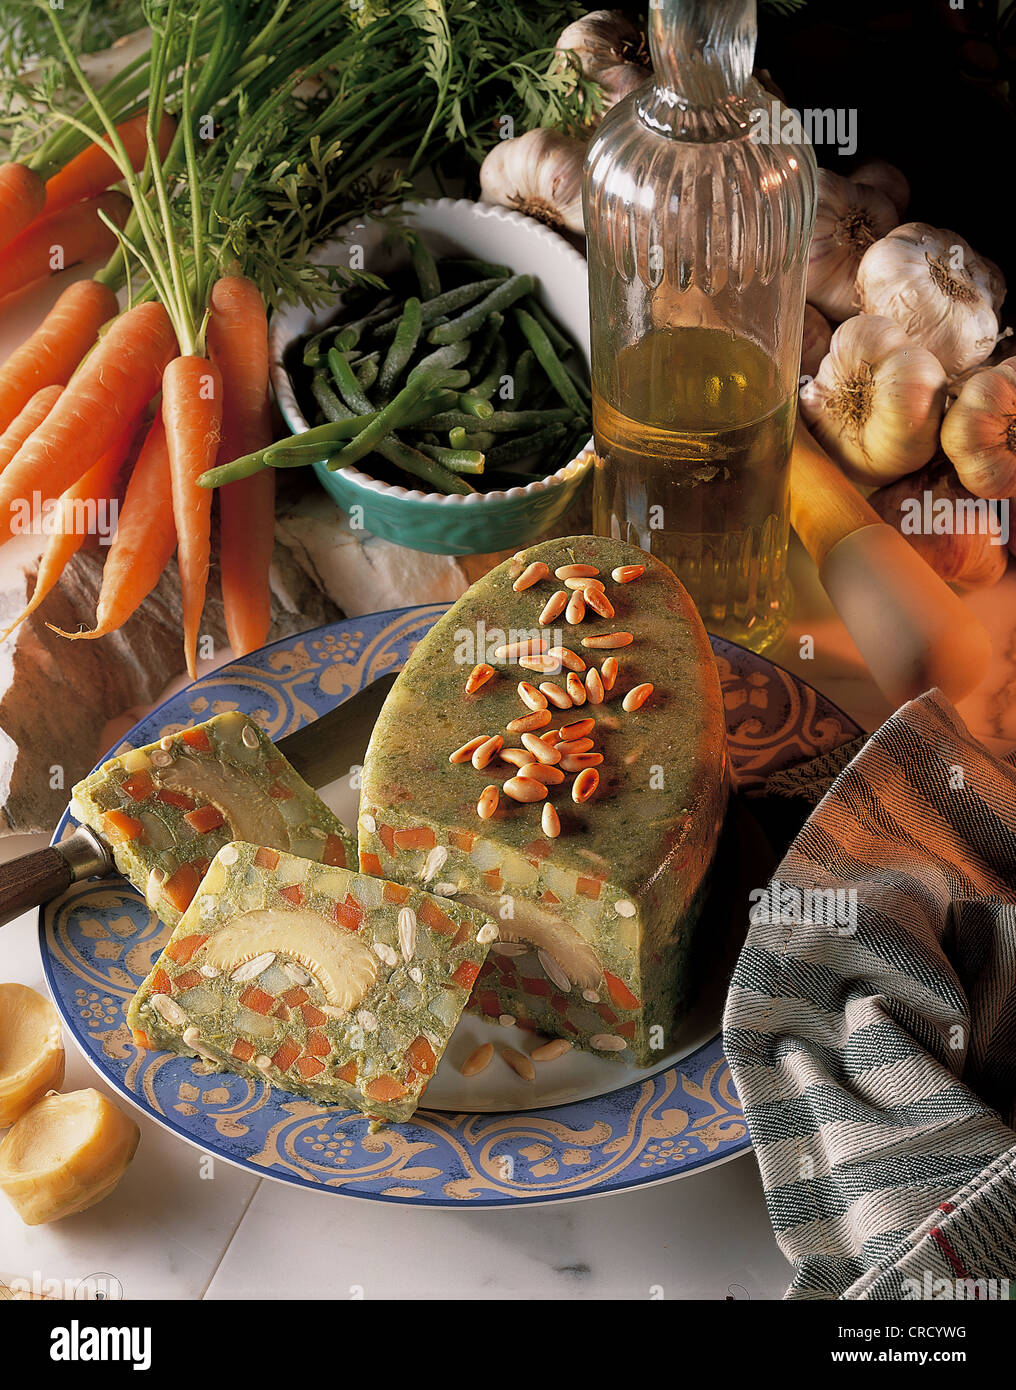 Grüne Bohnen Moussaka mit Karotten und Artischockenherzen, Griechenland. Stockfoto